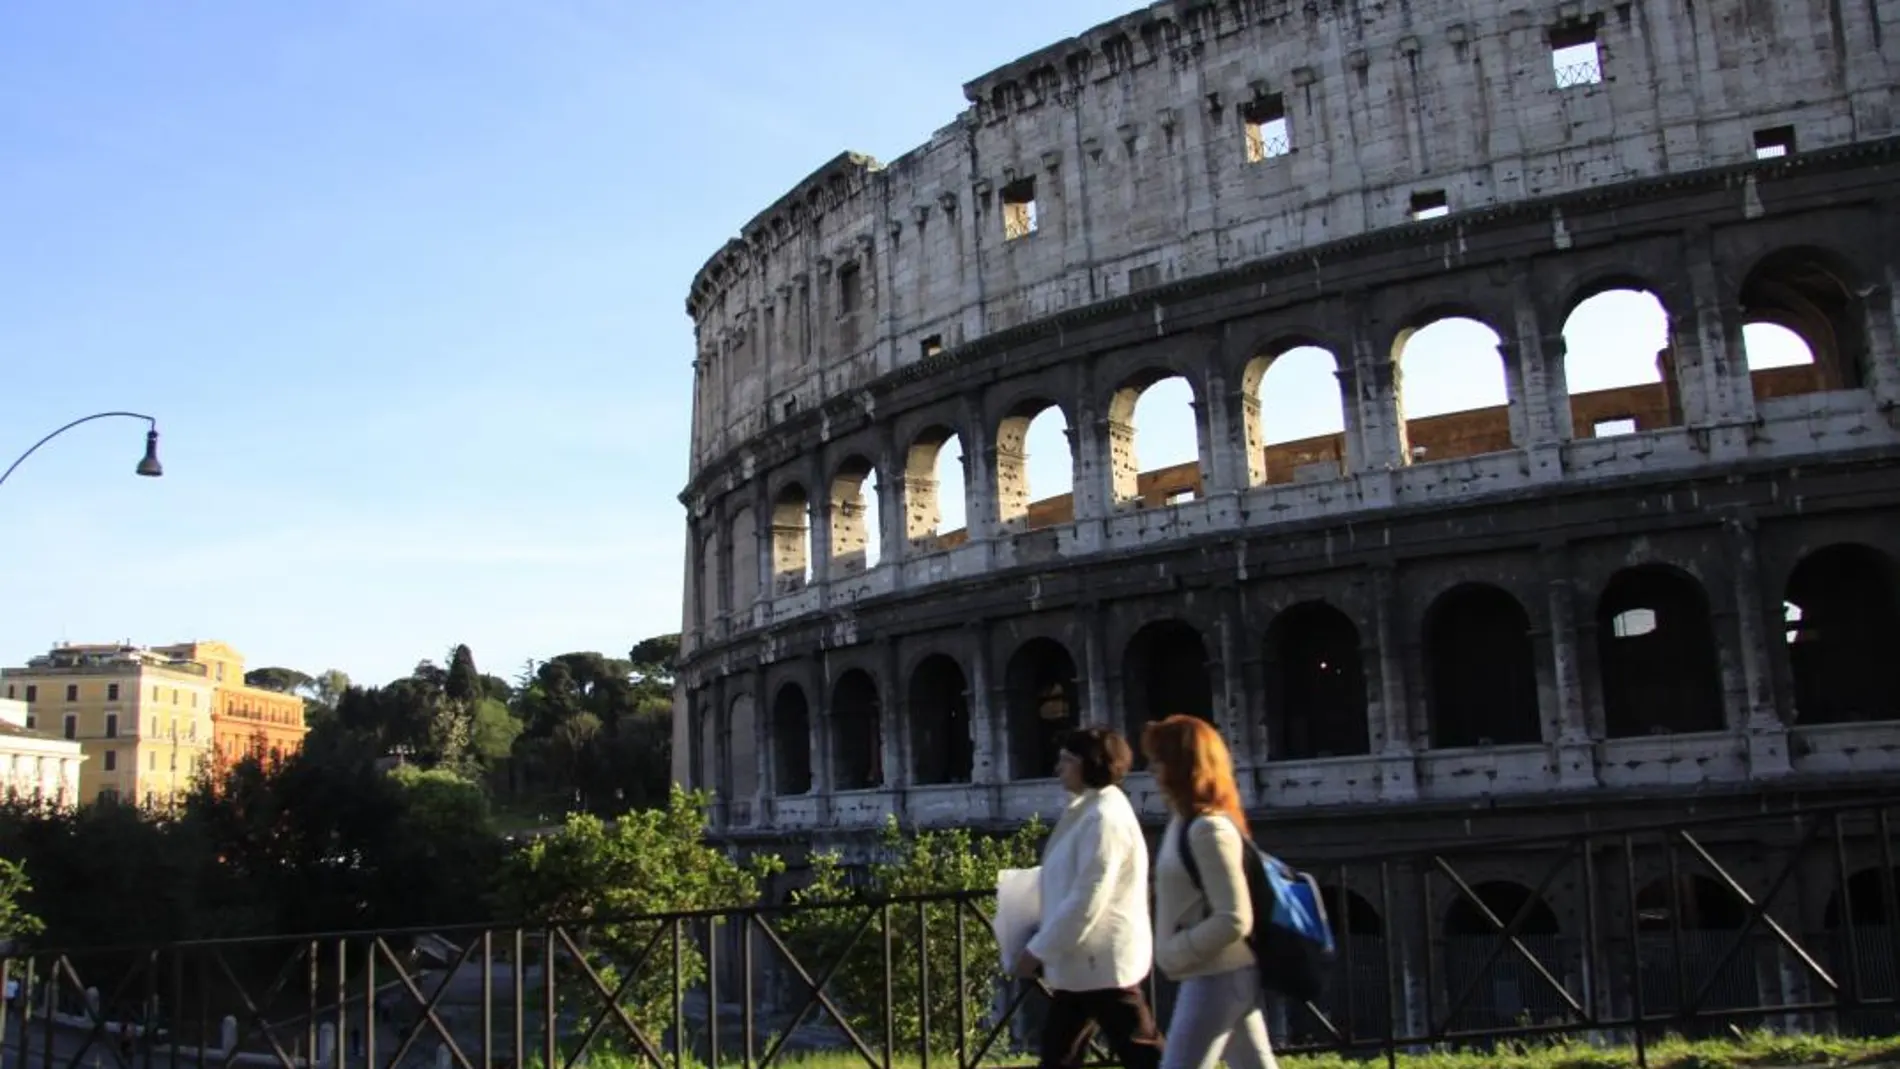 El Coliseo romano, el lugar más reservado por los españoles fuera de su país mediante apps de turismo / Sandra R. Poveda